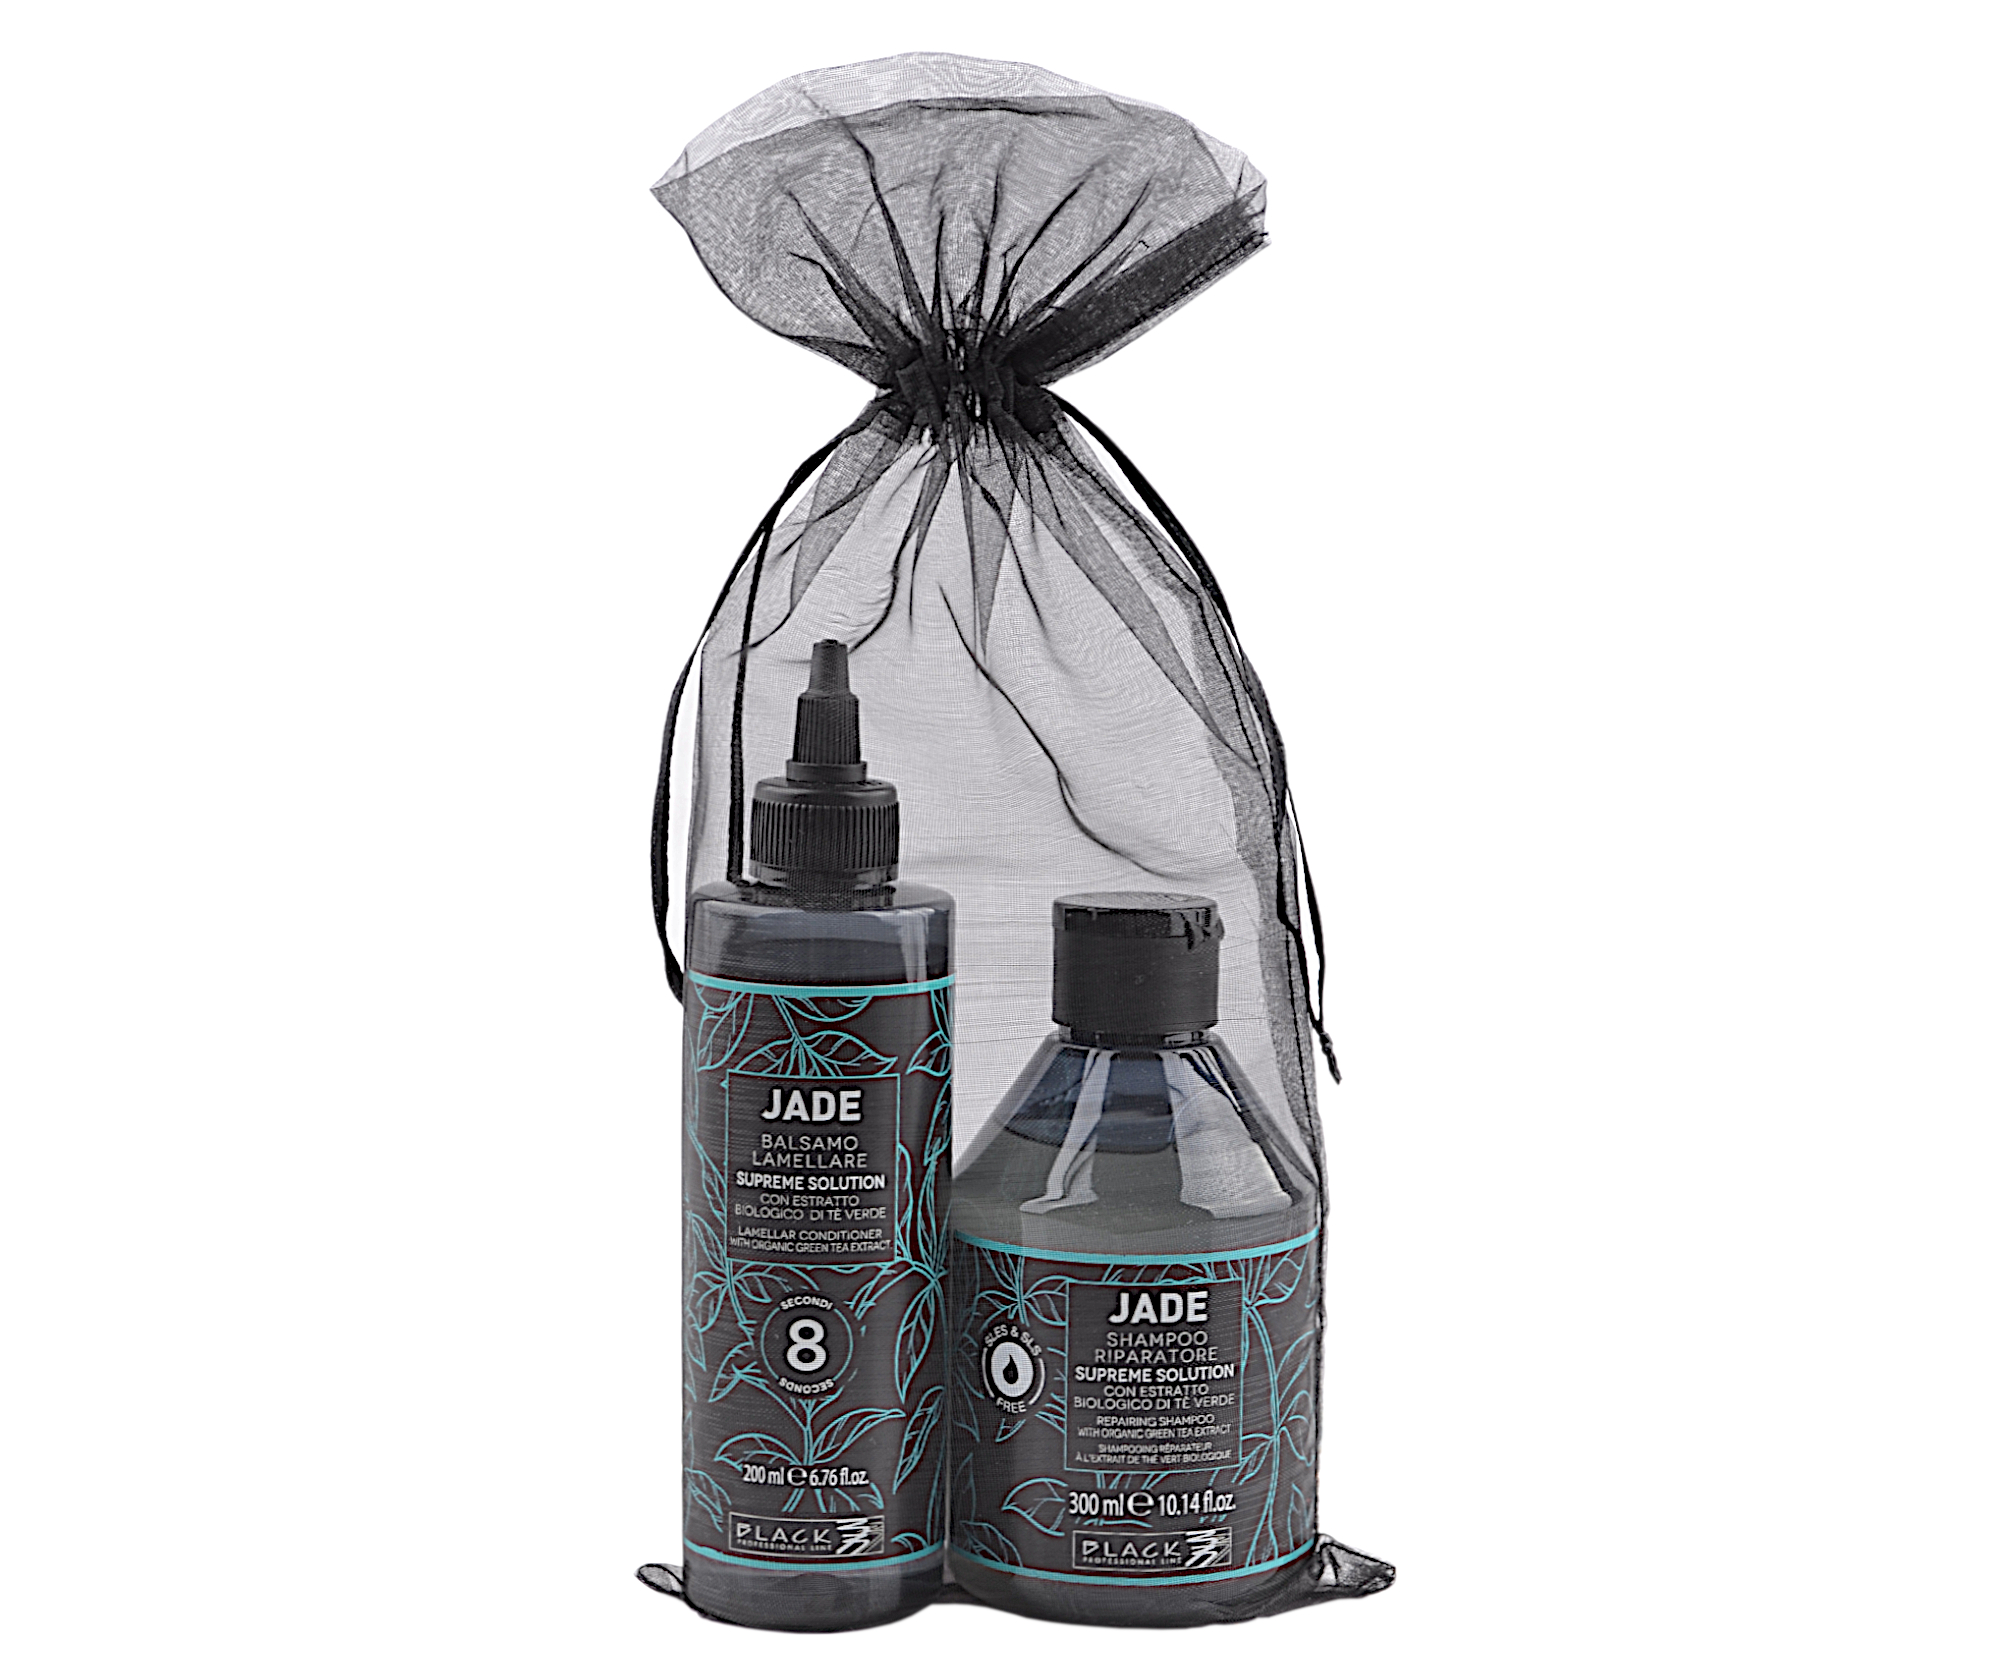 Dárková sada pro hydrataci a regeneraci vlasů Black Professional Jade Supreme Solution (1093B) + dárek zdarma